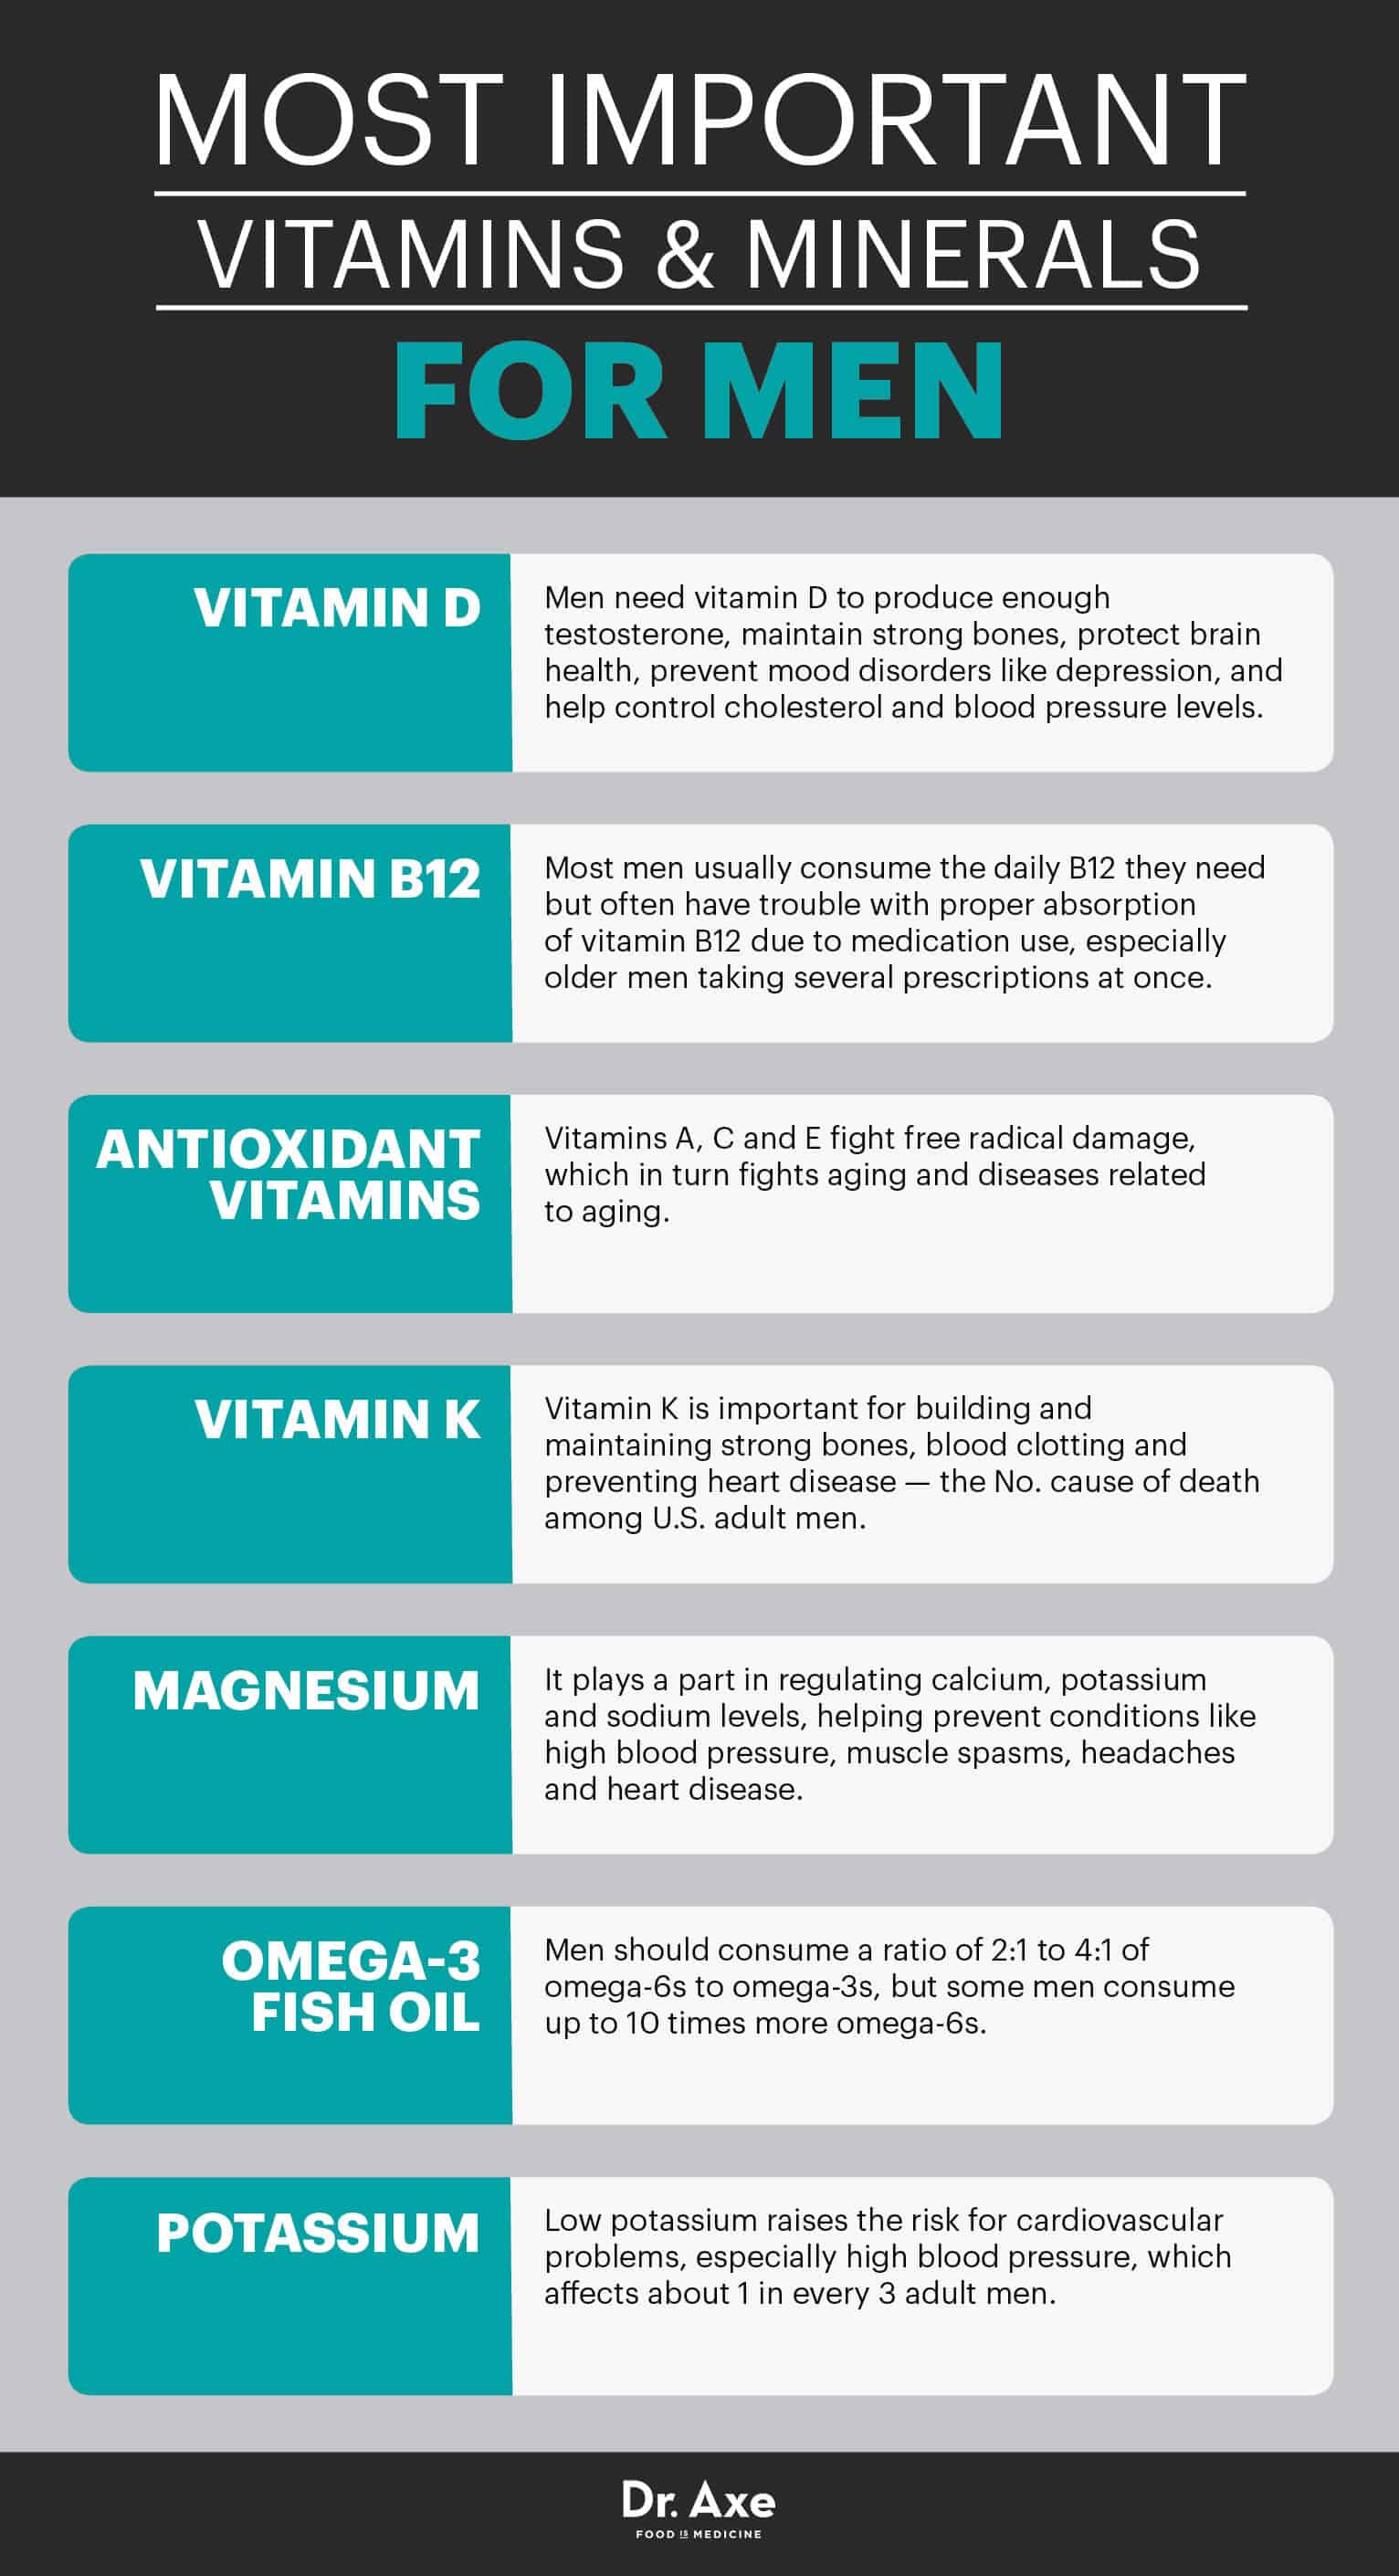 Best vitamins for men - Dr. Axe